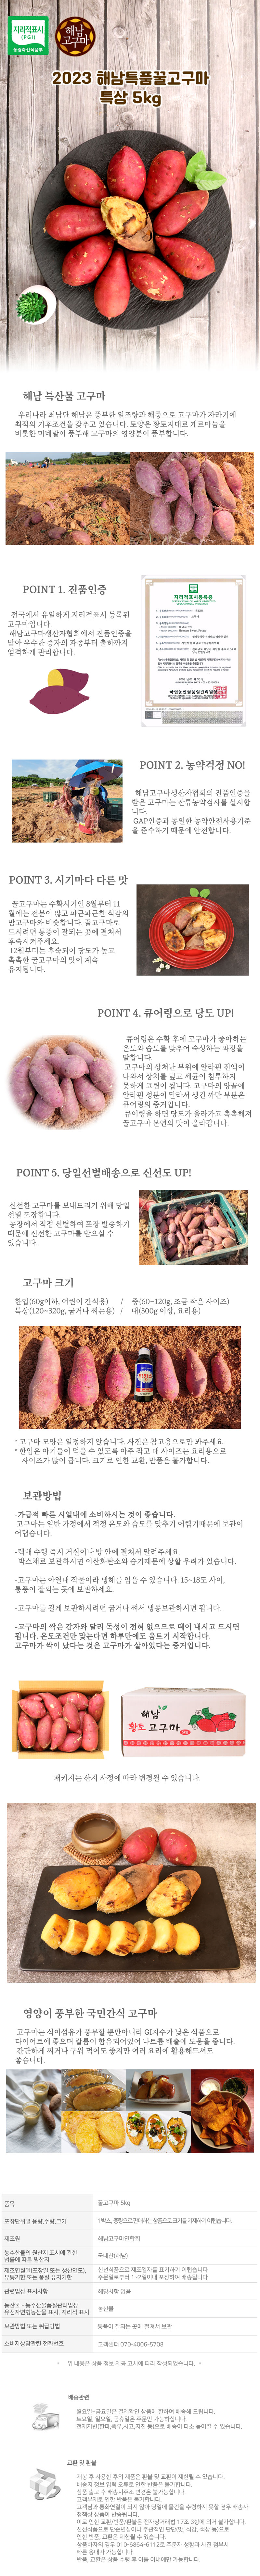 sweetpotato-7.jpg